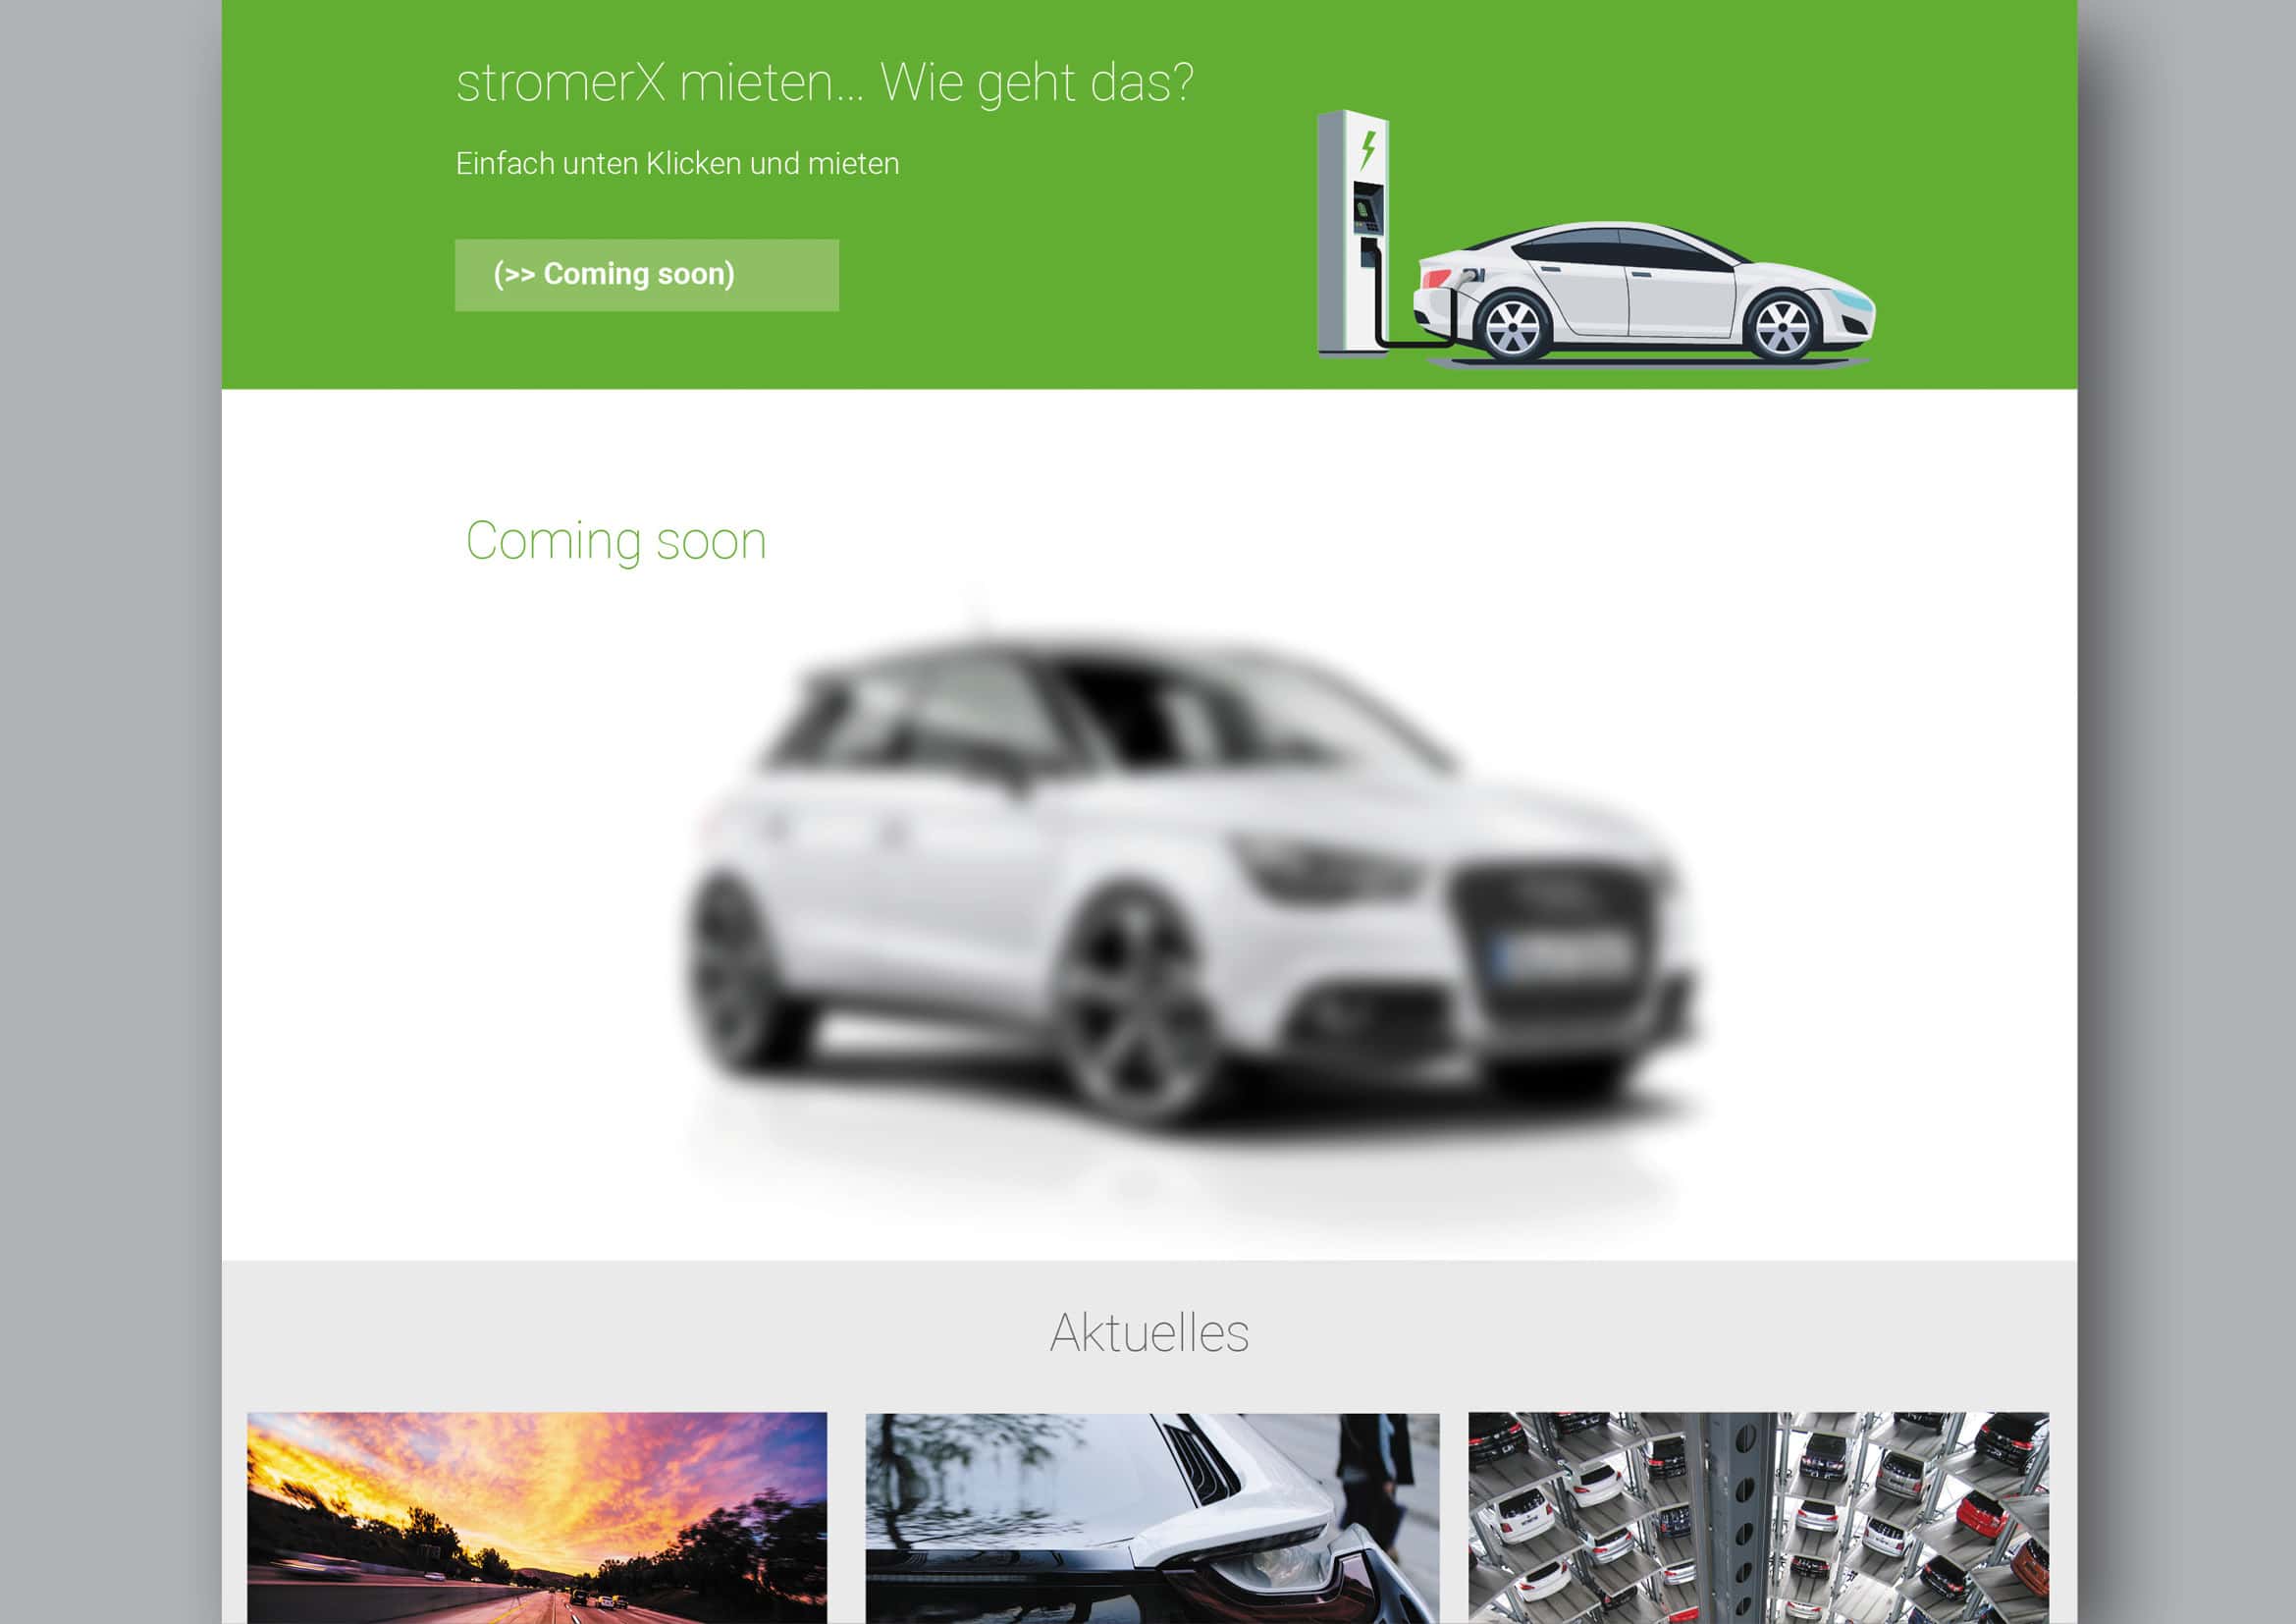 Corporate Design und Homepage Entwicklung StromerX: my e-mobility platform